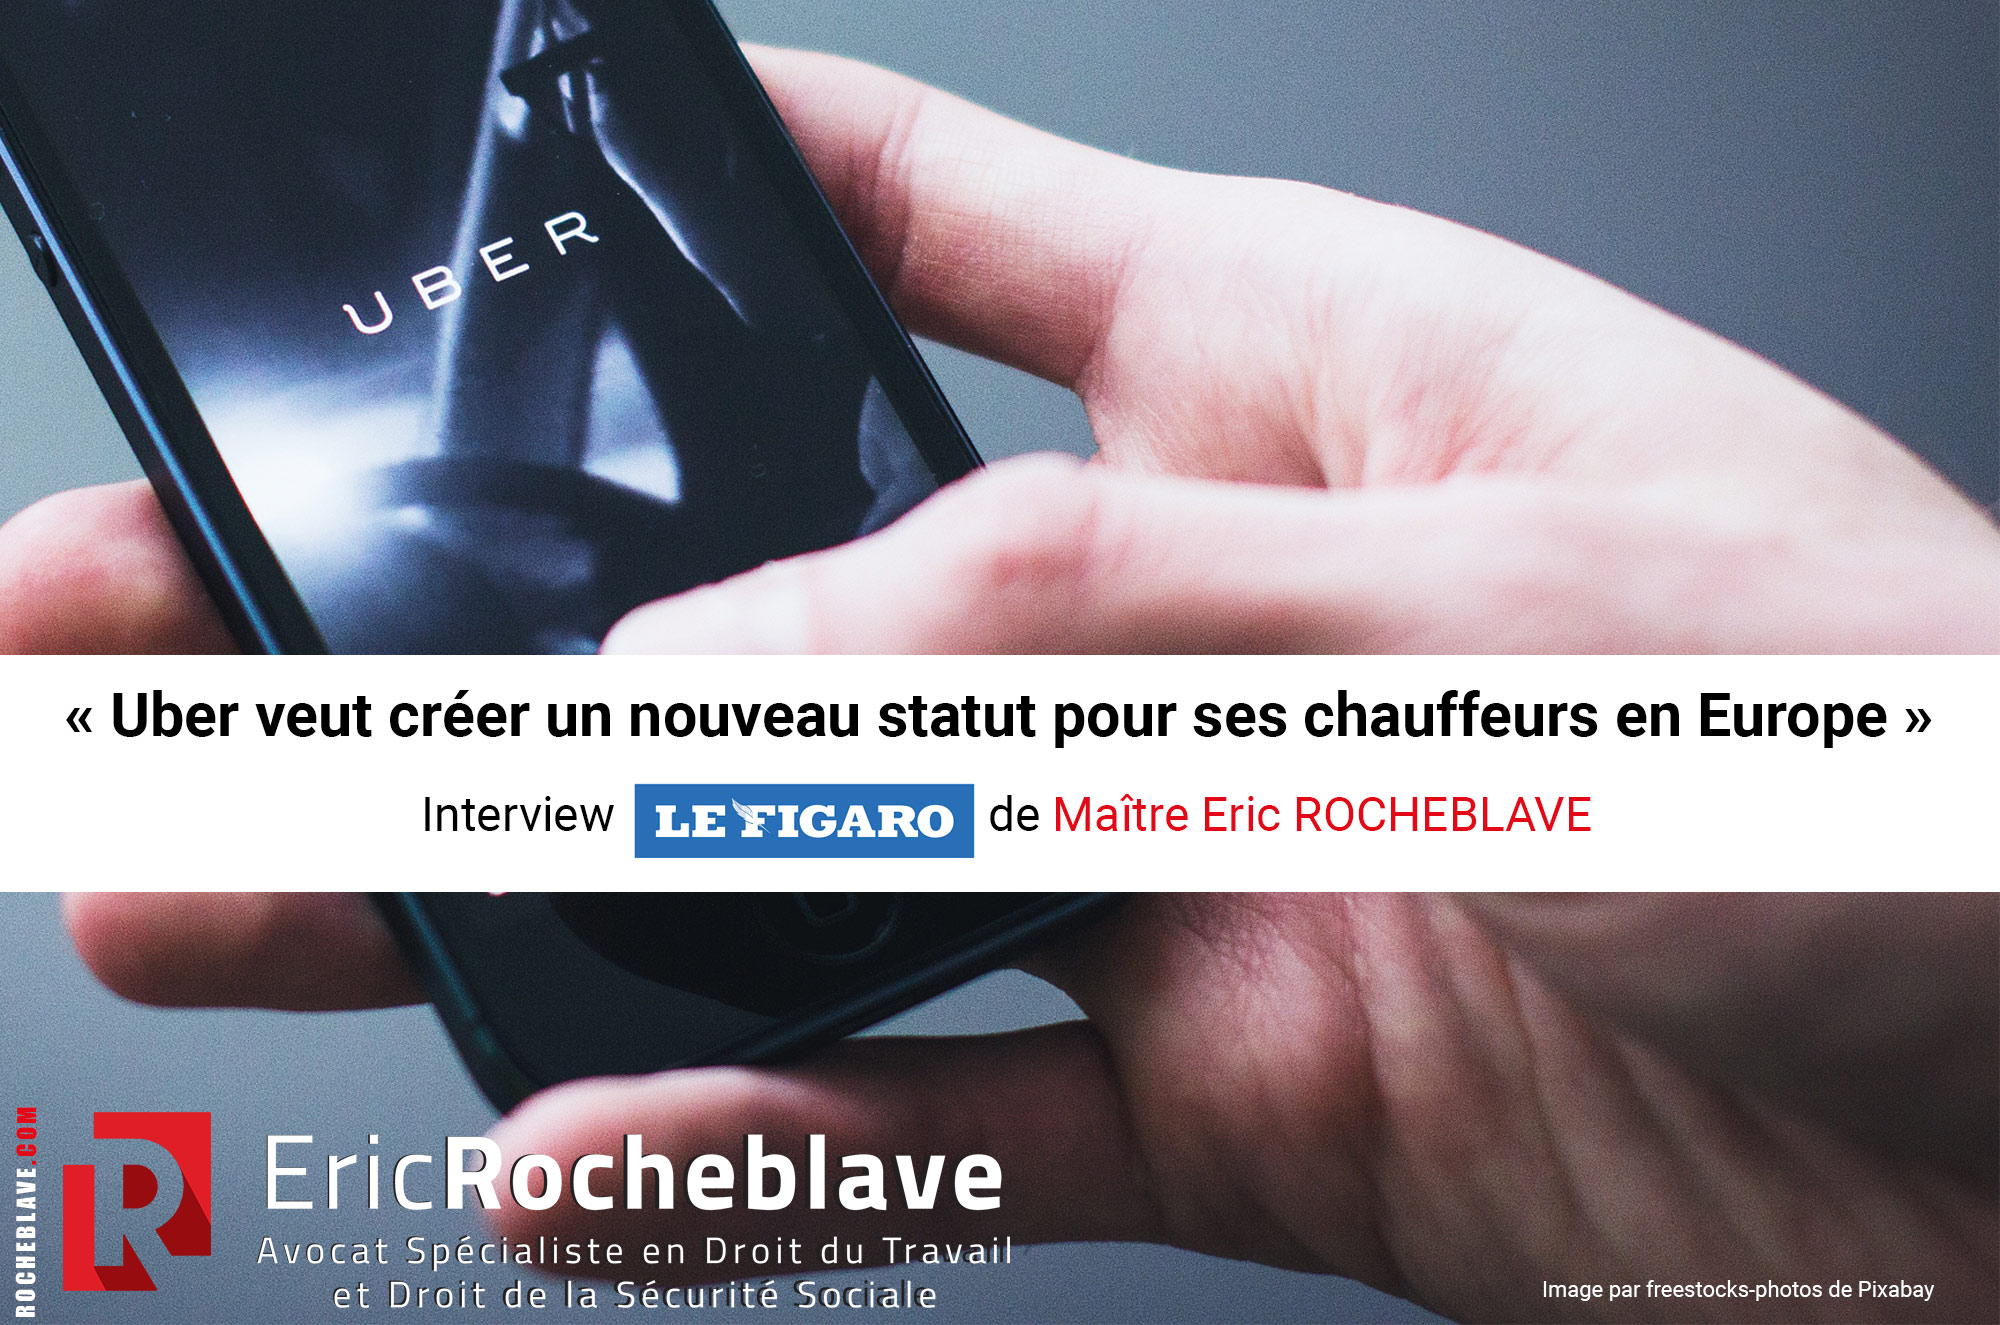 « Uber veut créer un nouveau statut pour ses chauffeurs en Europe » Interview Le Figaro de Maître Eric ROCHEBLAVE